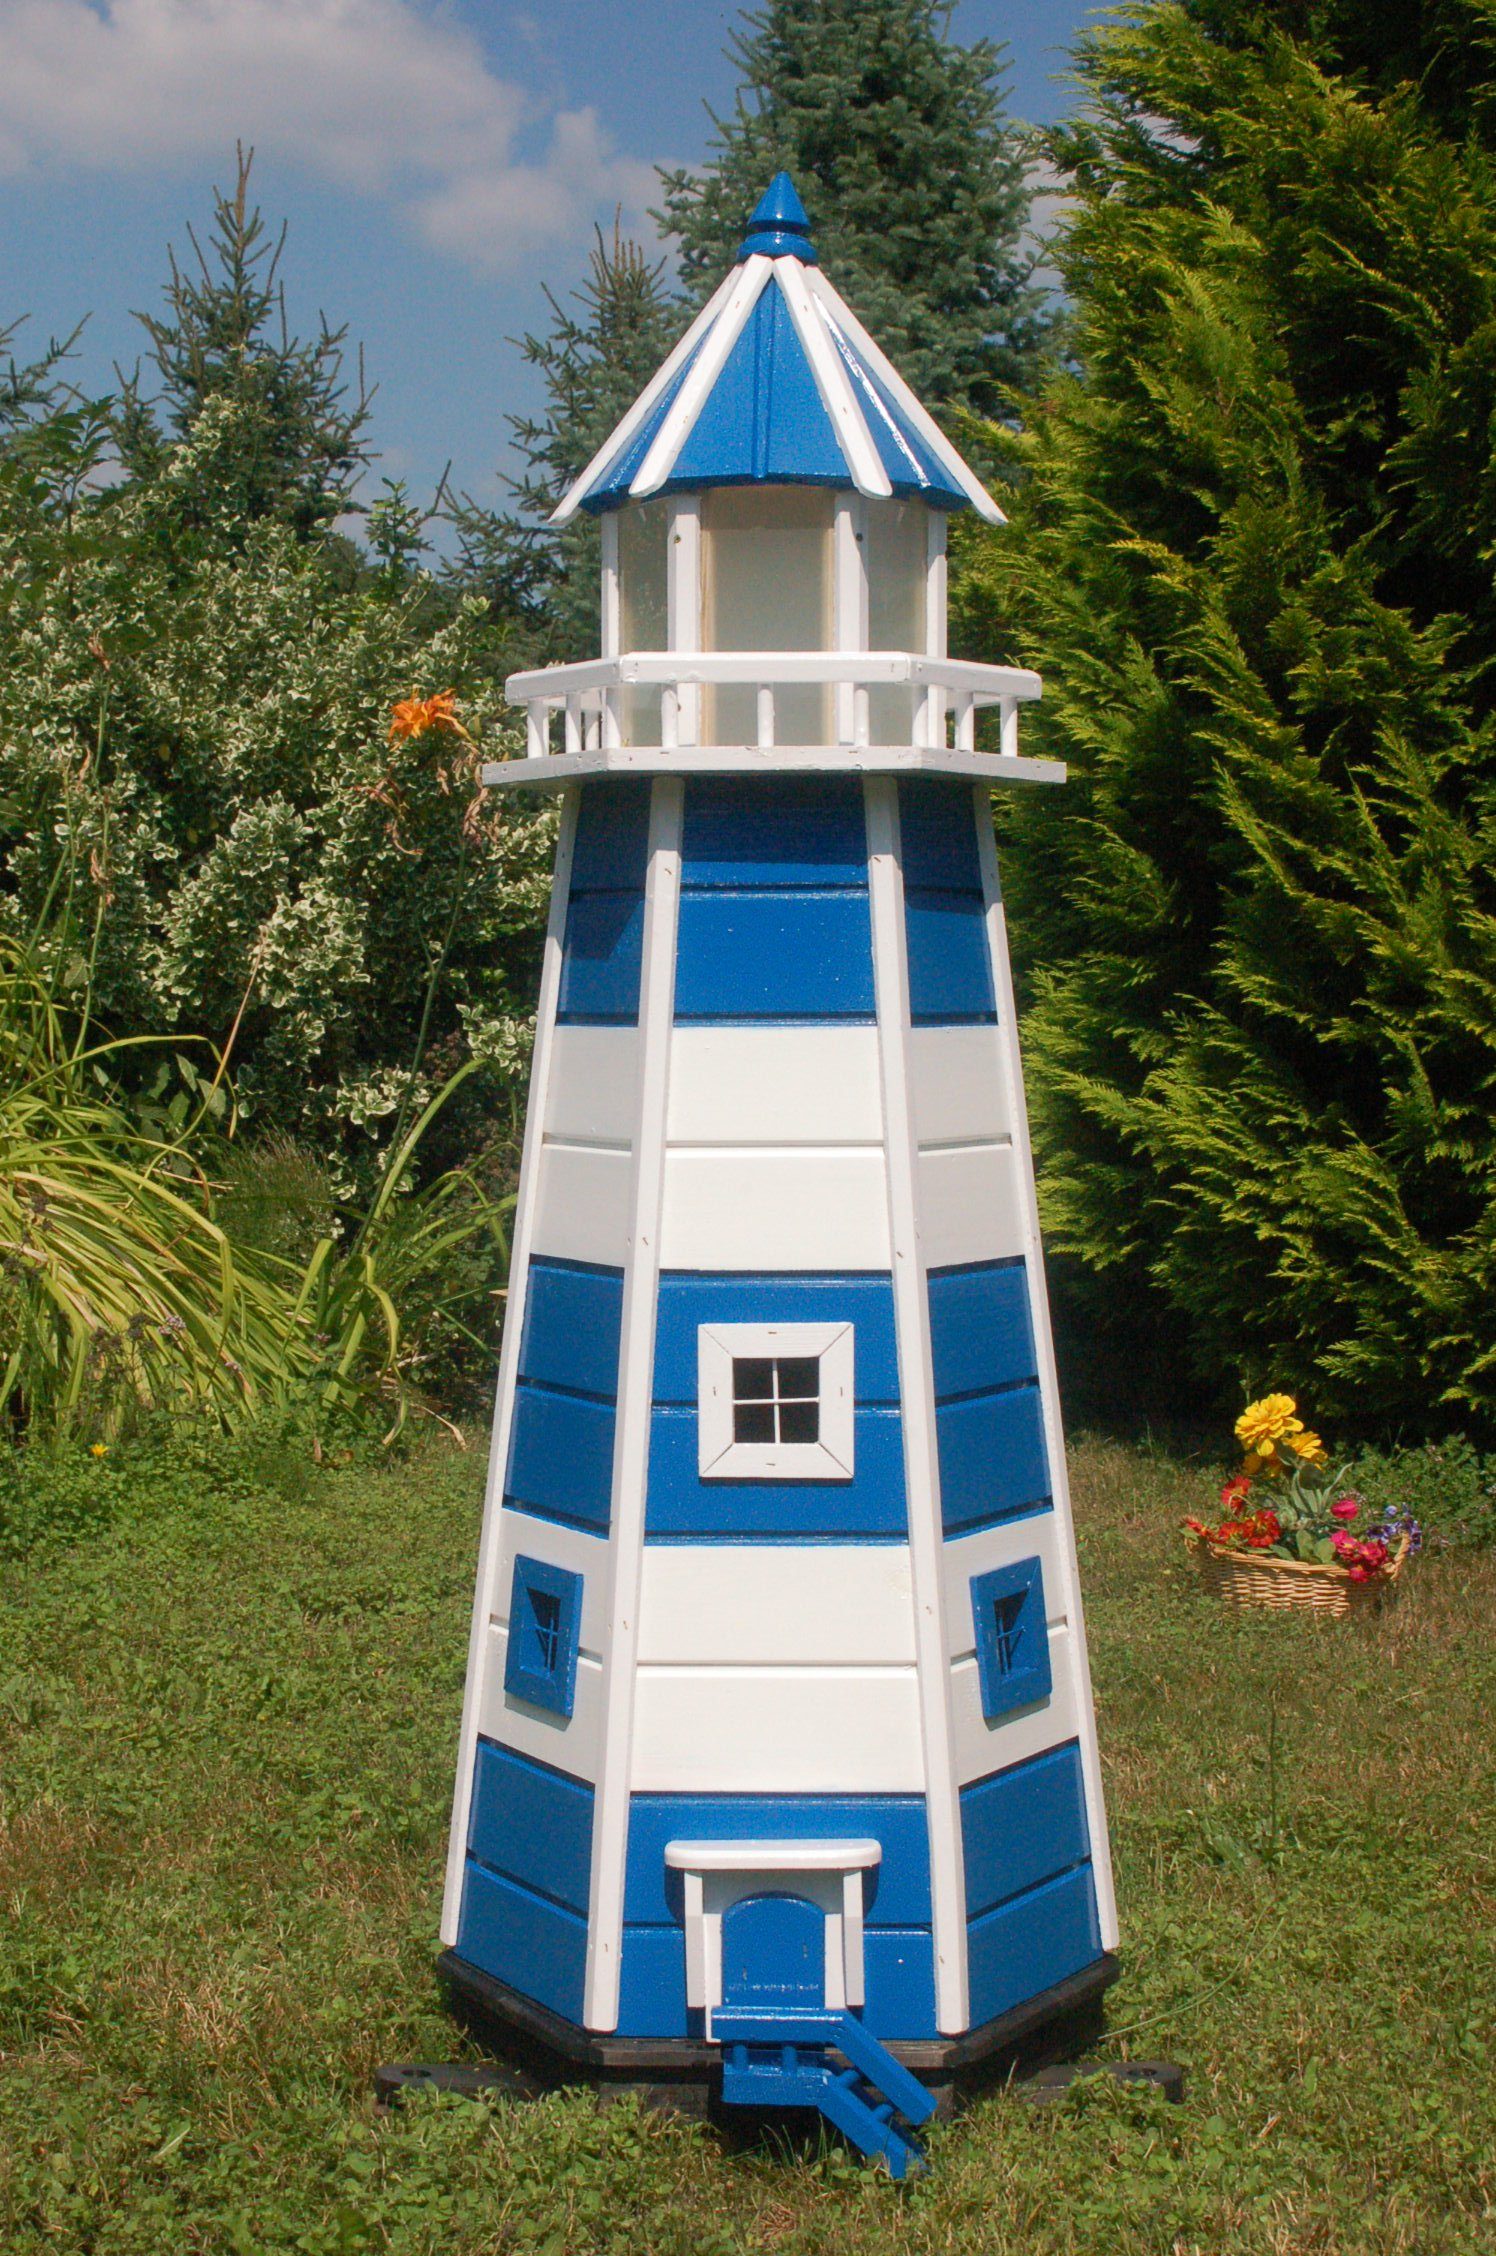 DSH DEKO SHOP HANNUSCH Gartenfigur Leuchtturm 1,40 m aus Holz mit Solarbeleuchtung blau/weiß